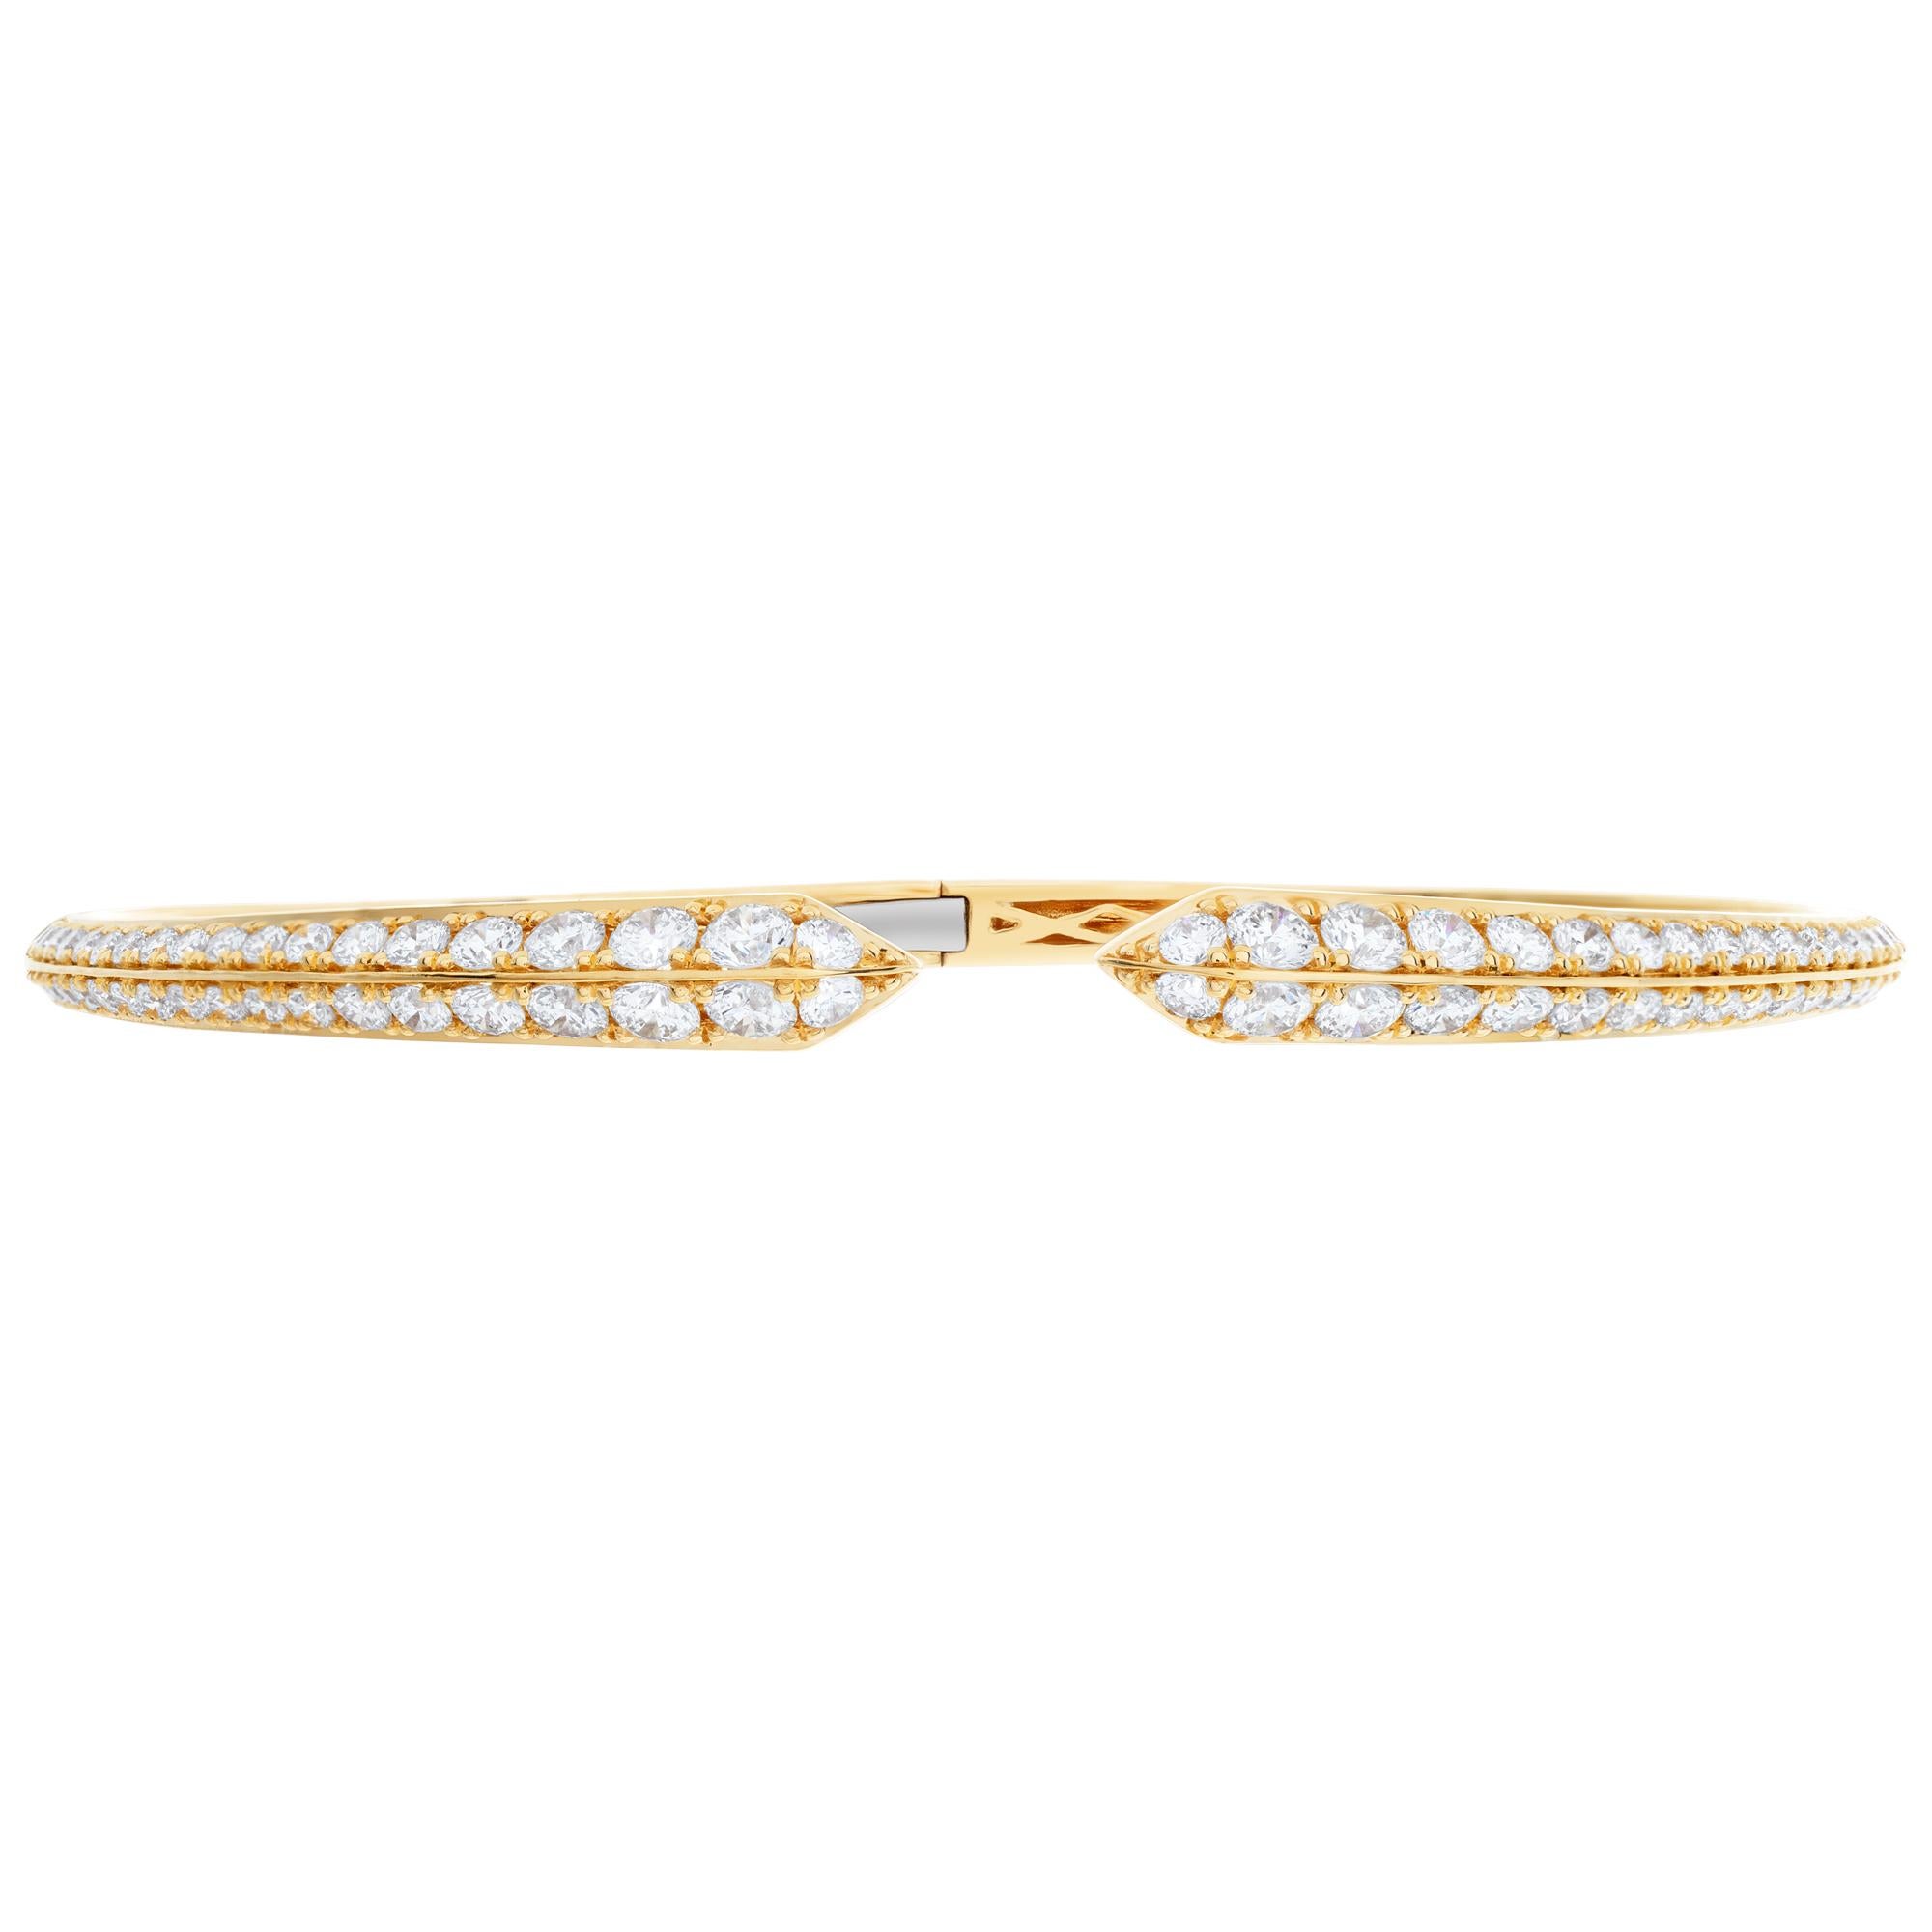 Superbe bracelet en or jaune 18 carats à charnière contenant 2,35 carats de diamants de couleur G-H et de pureté VS-SI. Convient à un poignet de 7,5 pouces maximum
